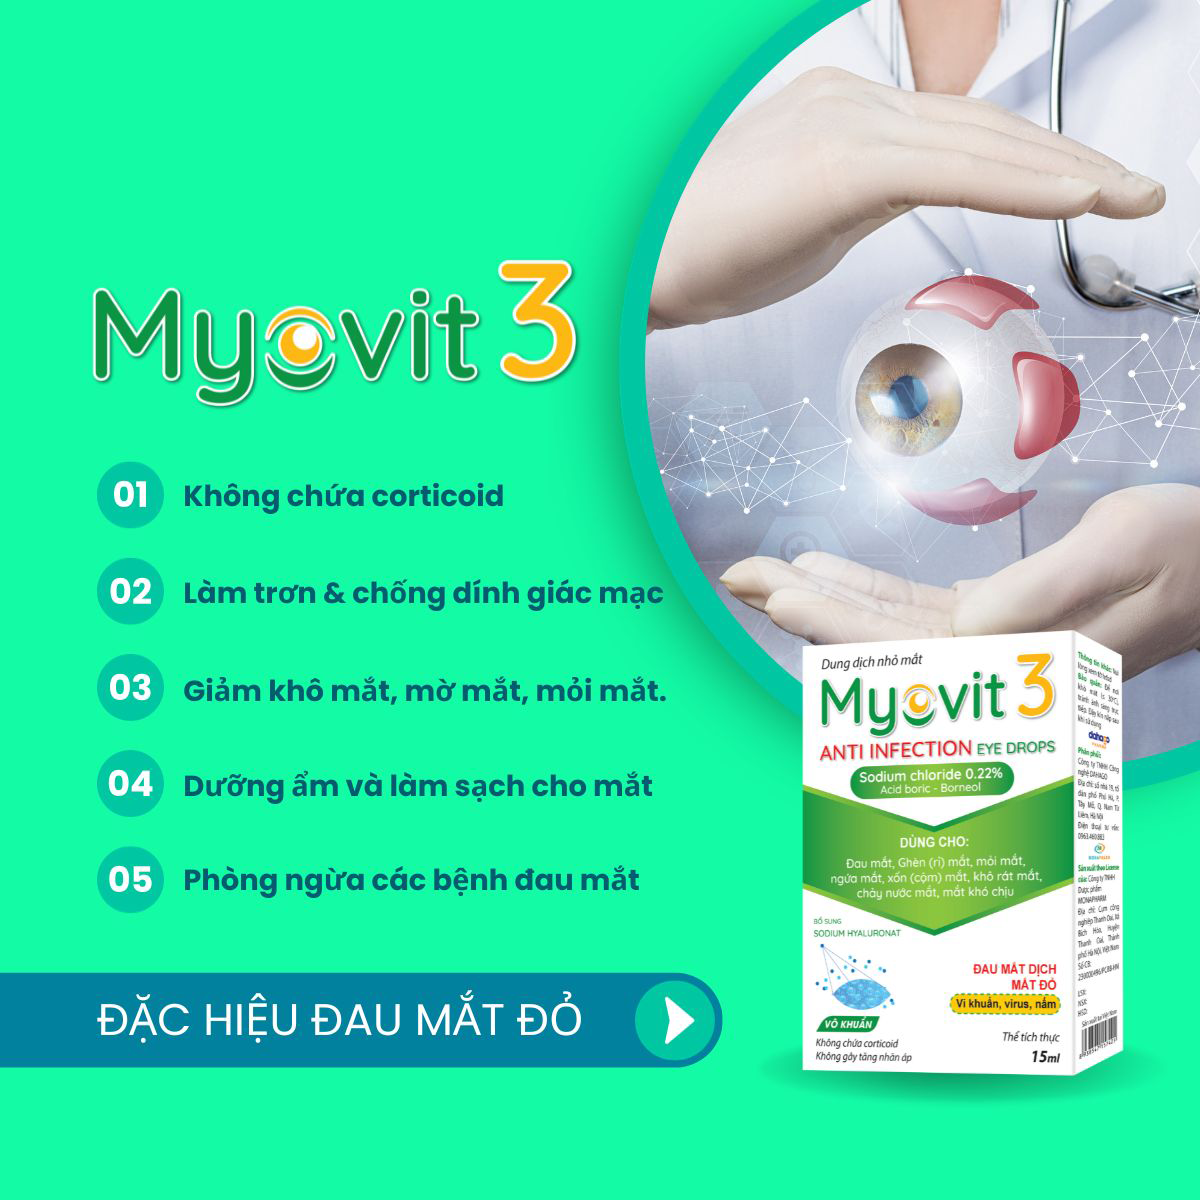 Ưu điểm của dung dịch nhỏ mắt Myovit 3